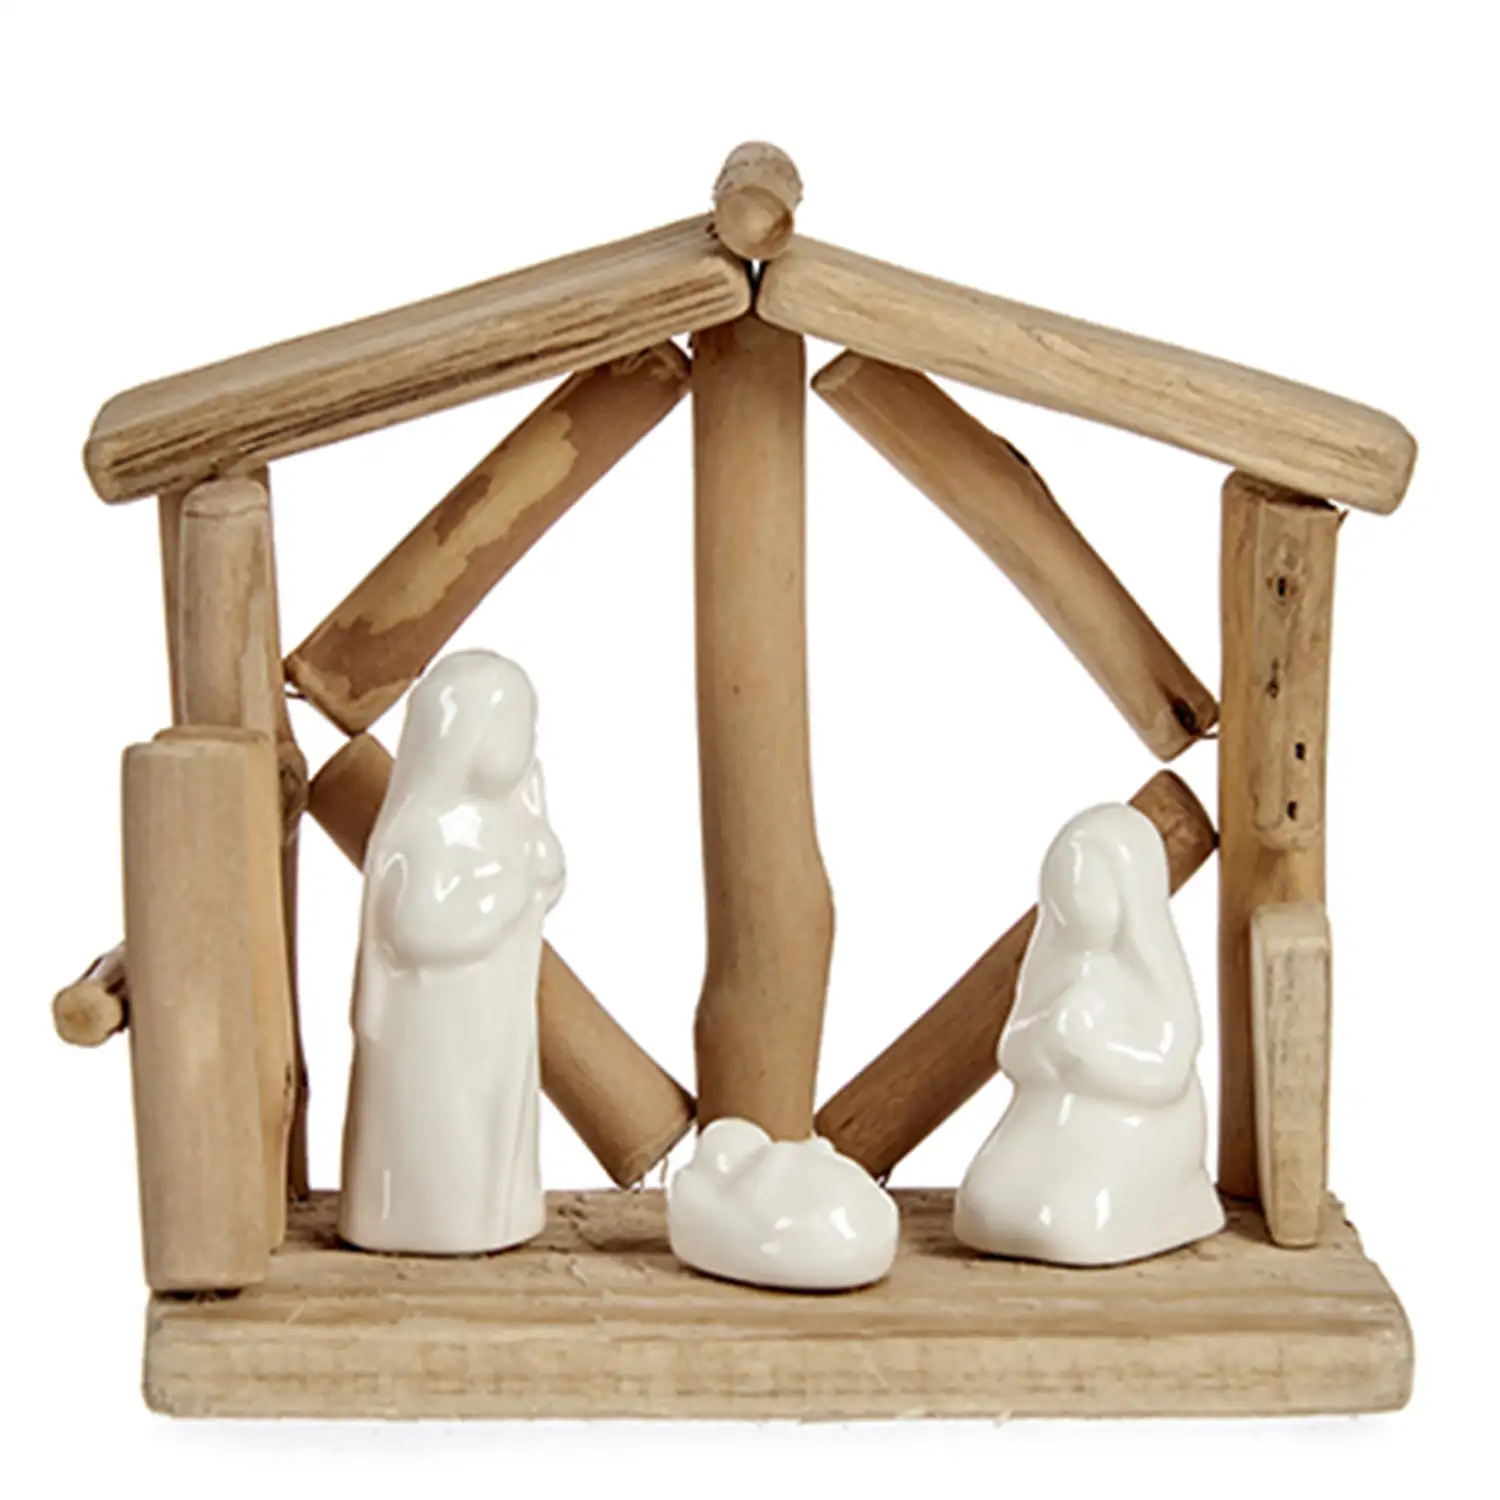 Nacimento de madera con 3 figuritas.